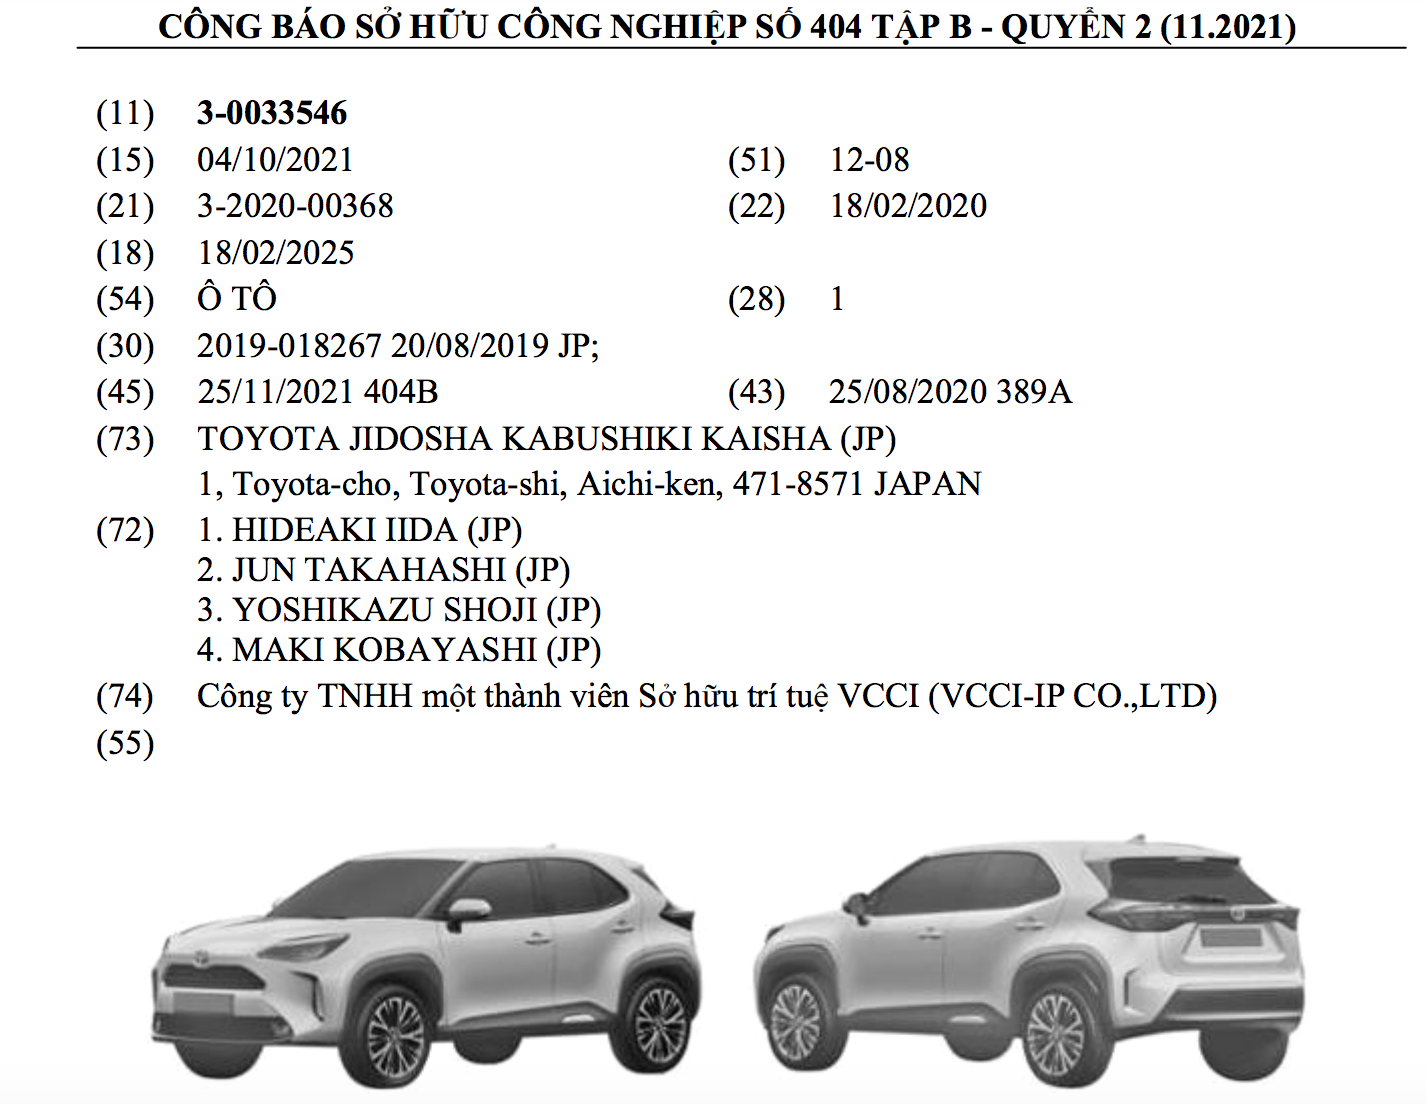 Thông tin về Toyota Yaris Cross vừa xuất hiện trong Công báo của Cục sở hữu trí tuệ Việt Nam